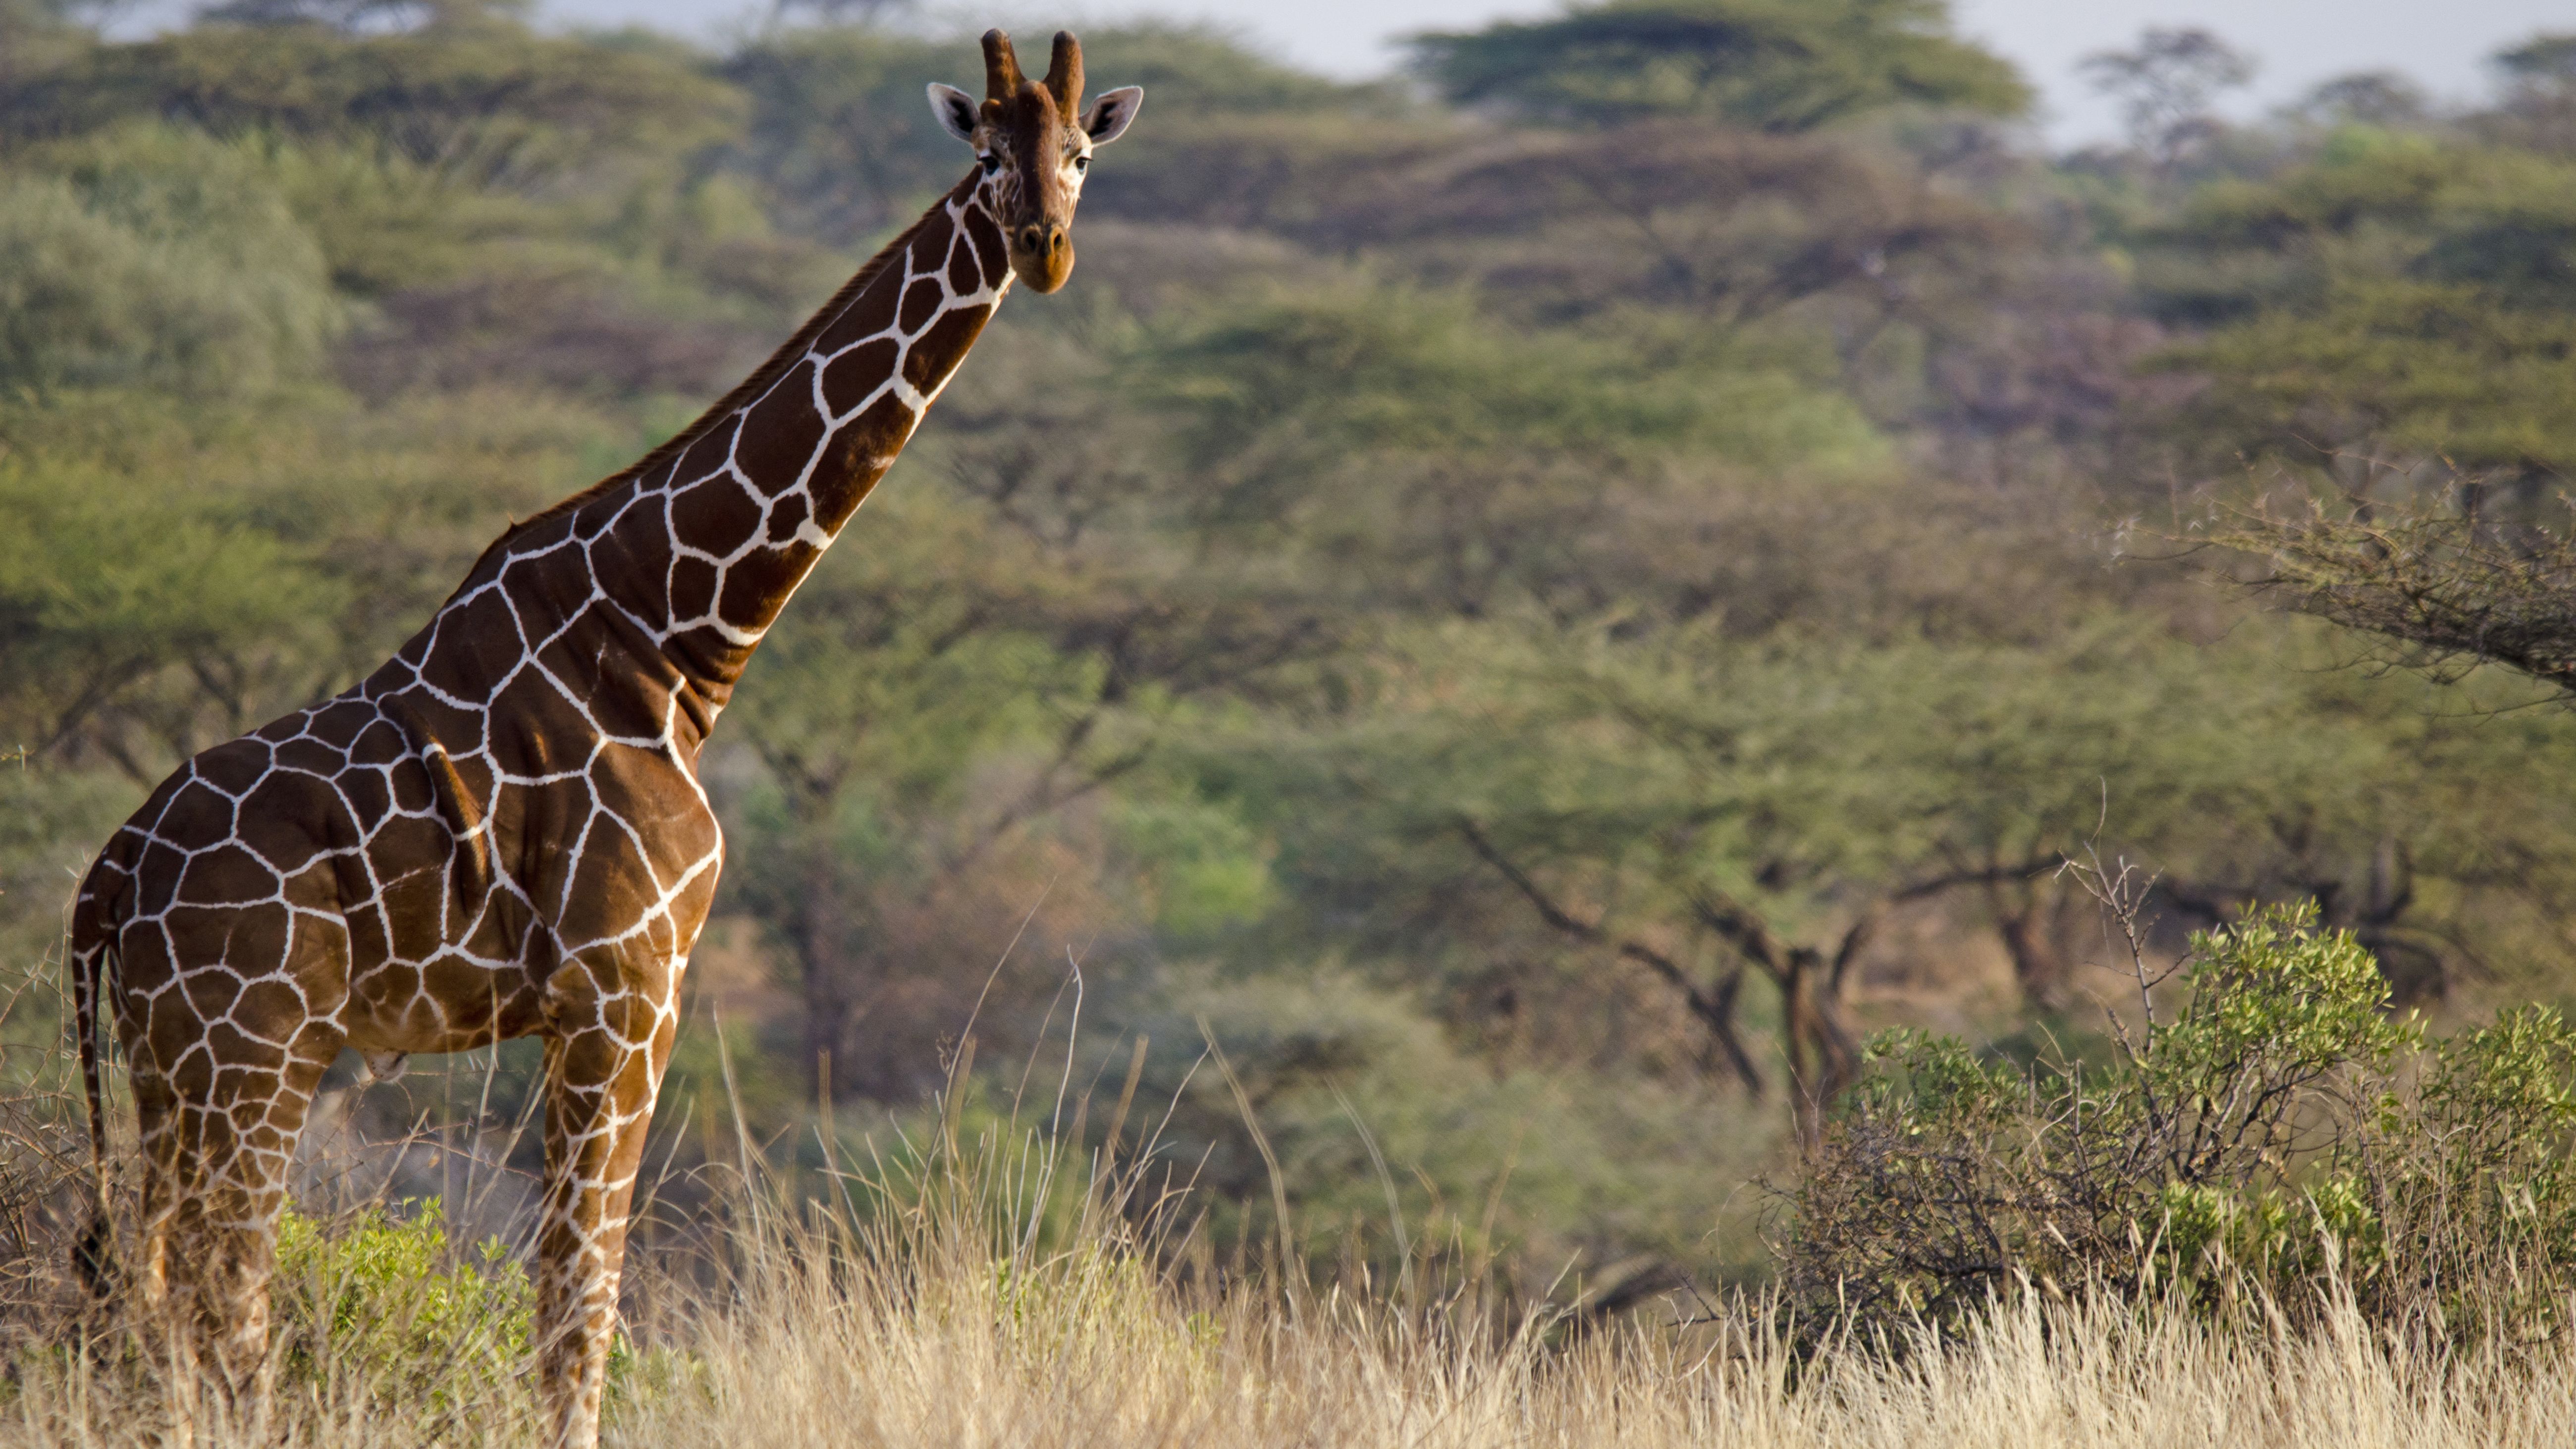 Imagine a world without giraffes | CNN